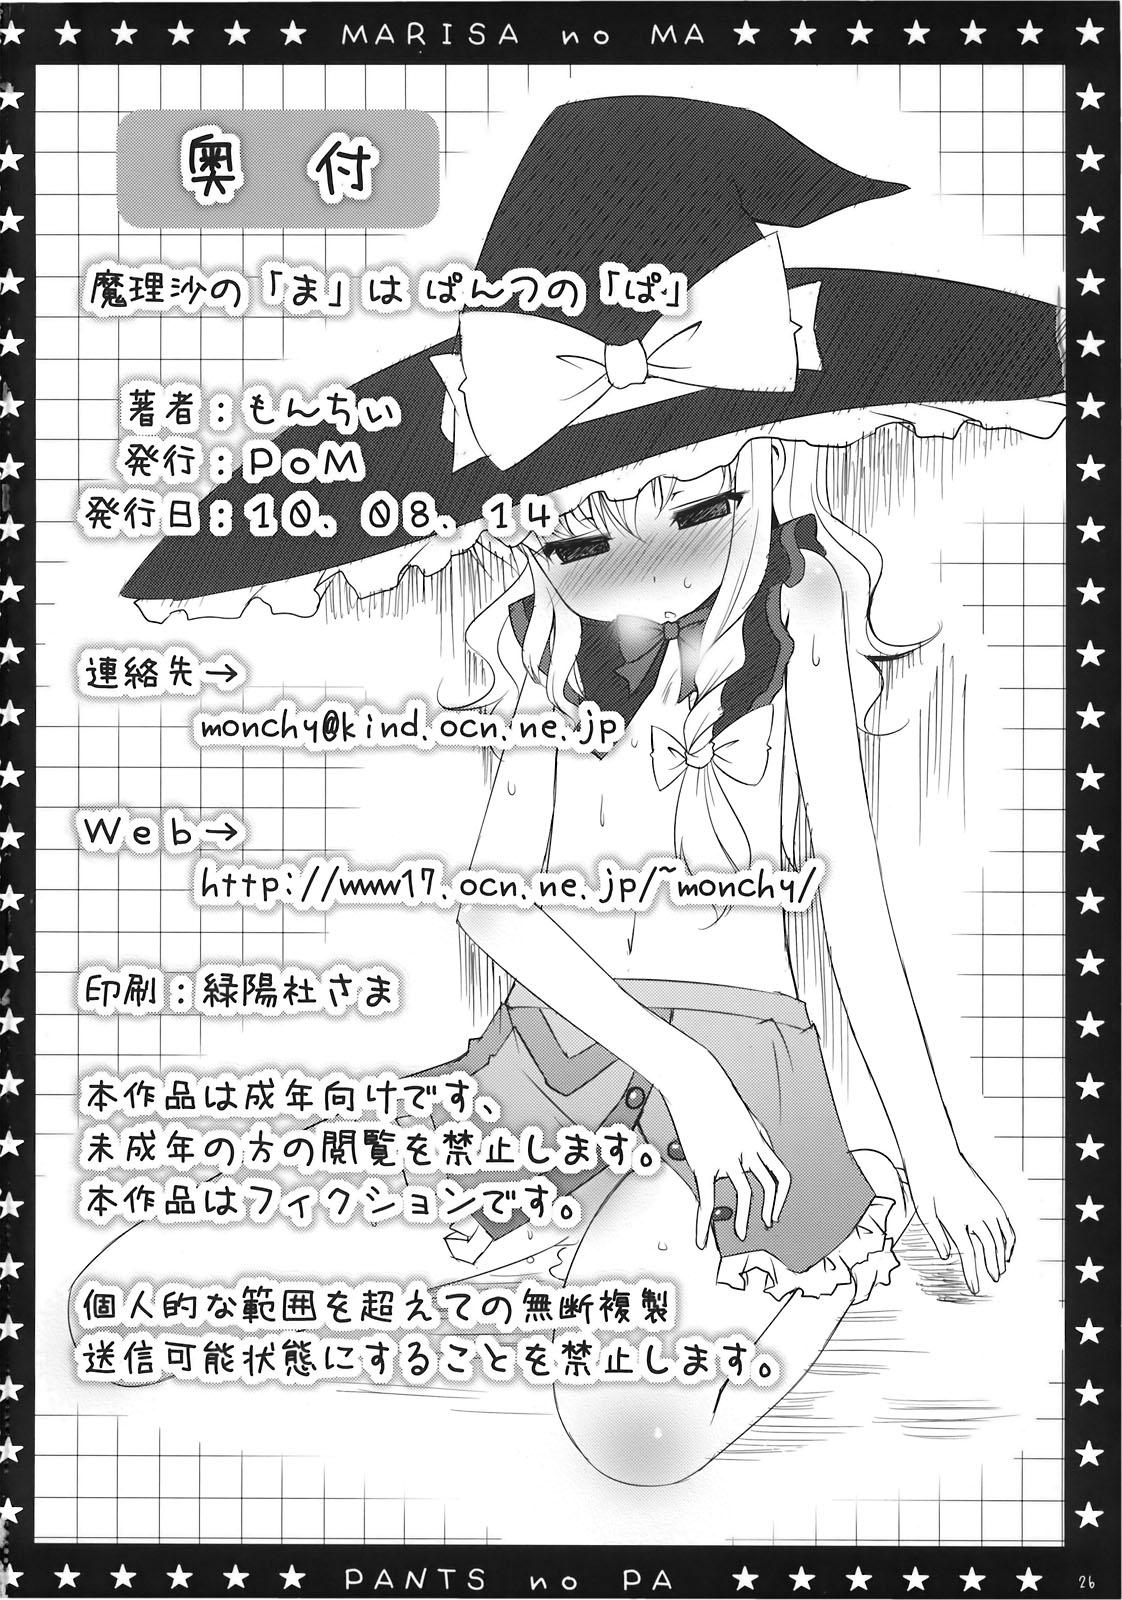 Big Ass Marisa no「Ma」wa Pantsu no「Pa」 - Touhou project Jacking - Page 26